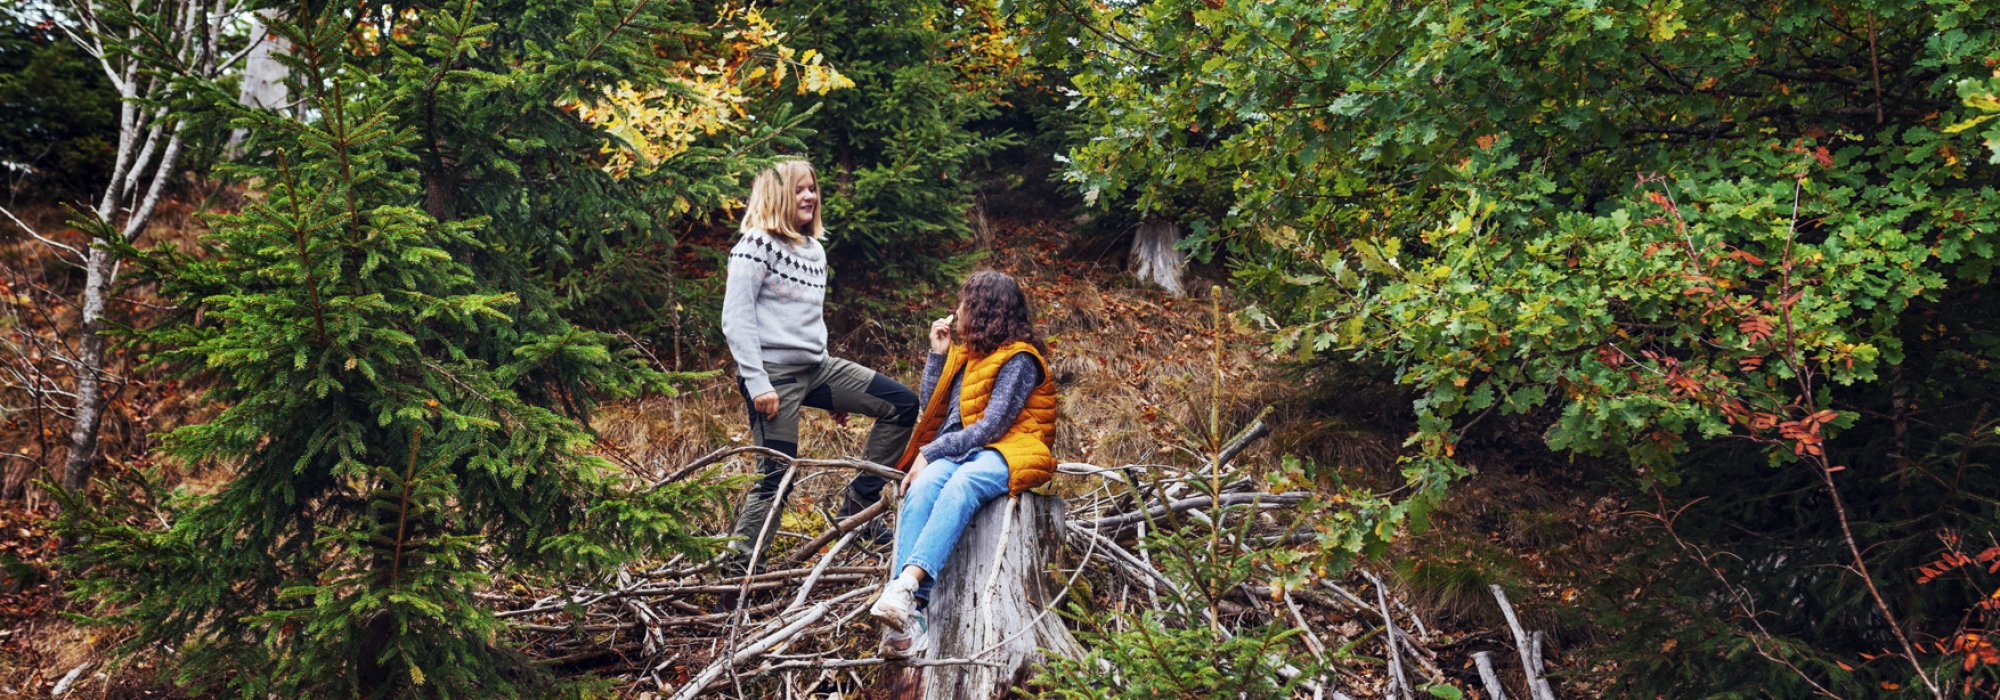 Två tjejer en höstig dag i en granskog. Den ena sitter på en stubbe och tittar upp mot den andra som står bredvid. Foto.